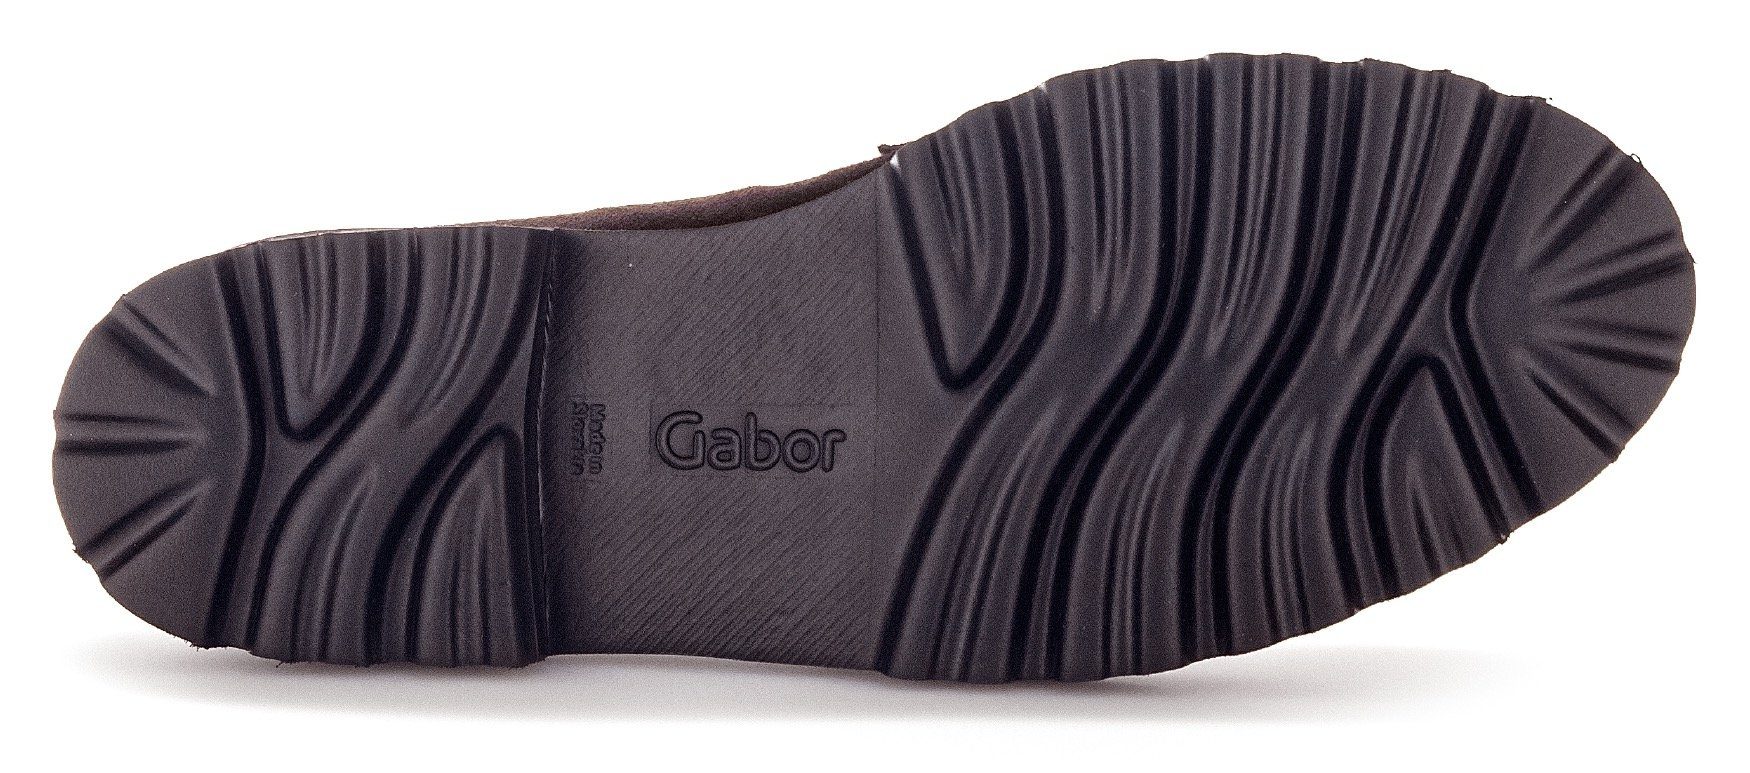 Best Gabor Fitting-Ausstattung dunkelbraun-schwarz Slipper mit